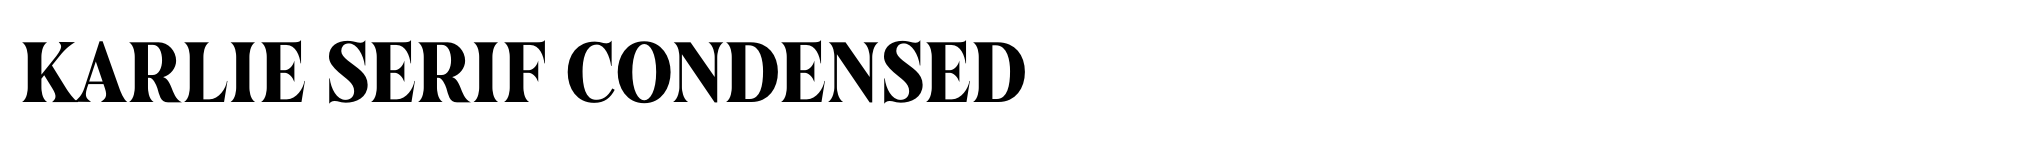 Karlie Serif Condensed image